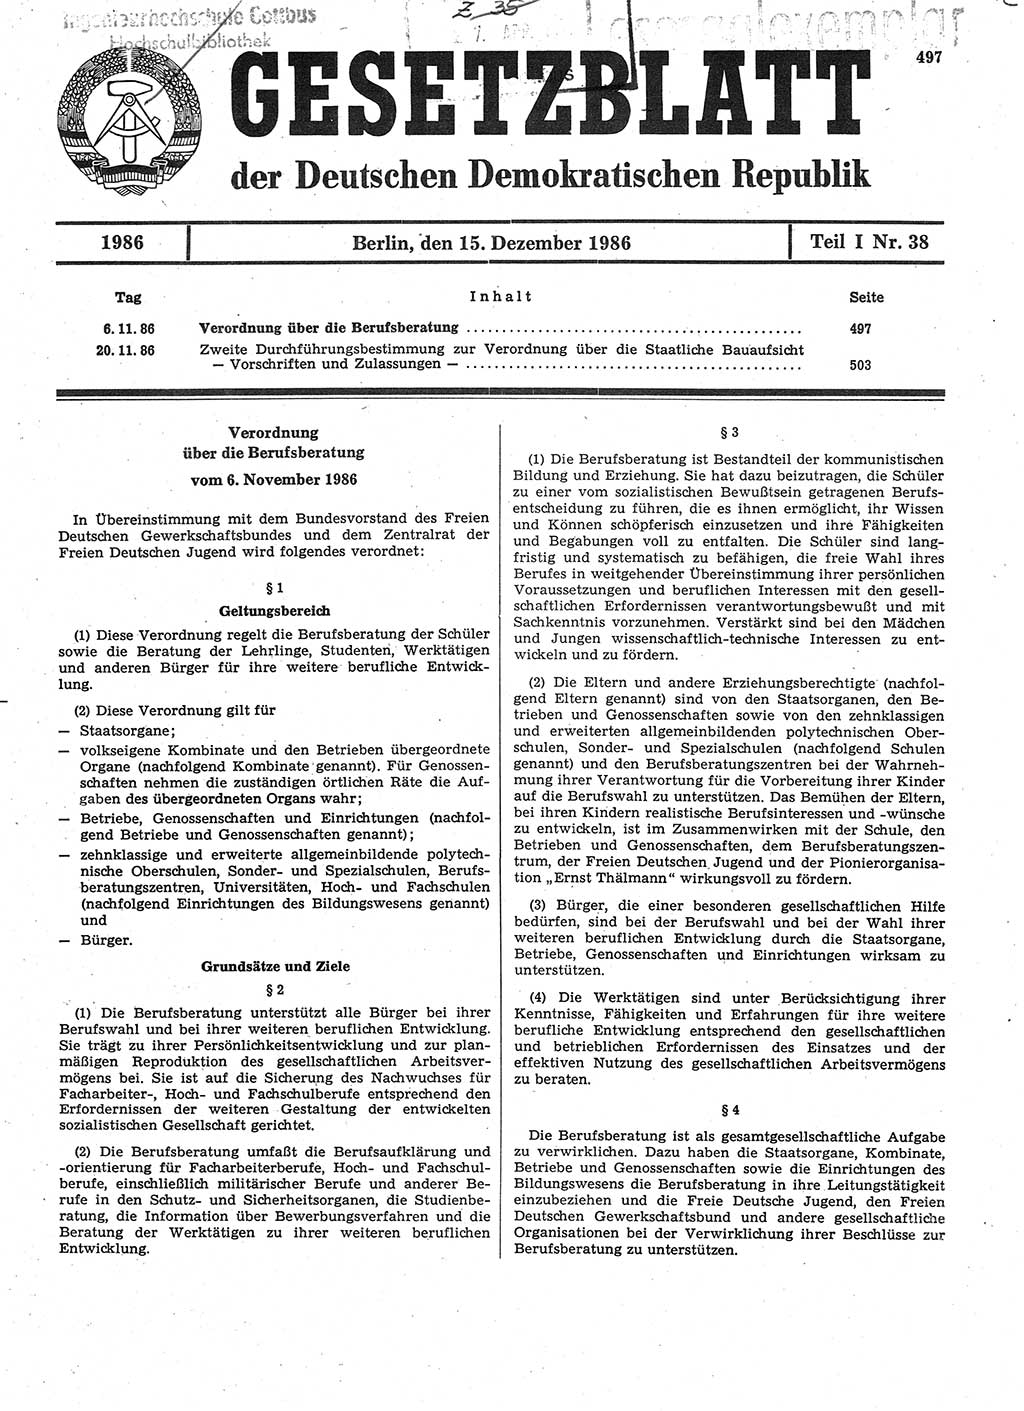 Gesetzblatt (GBl.) der Deutschen Demokratischen Republik (DDR) Teil Ⅰ 1986, Seite 497 (GBl. DDR Ⅰ 1986, S. 497)